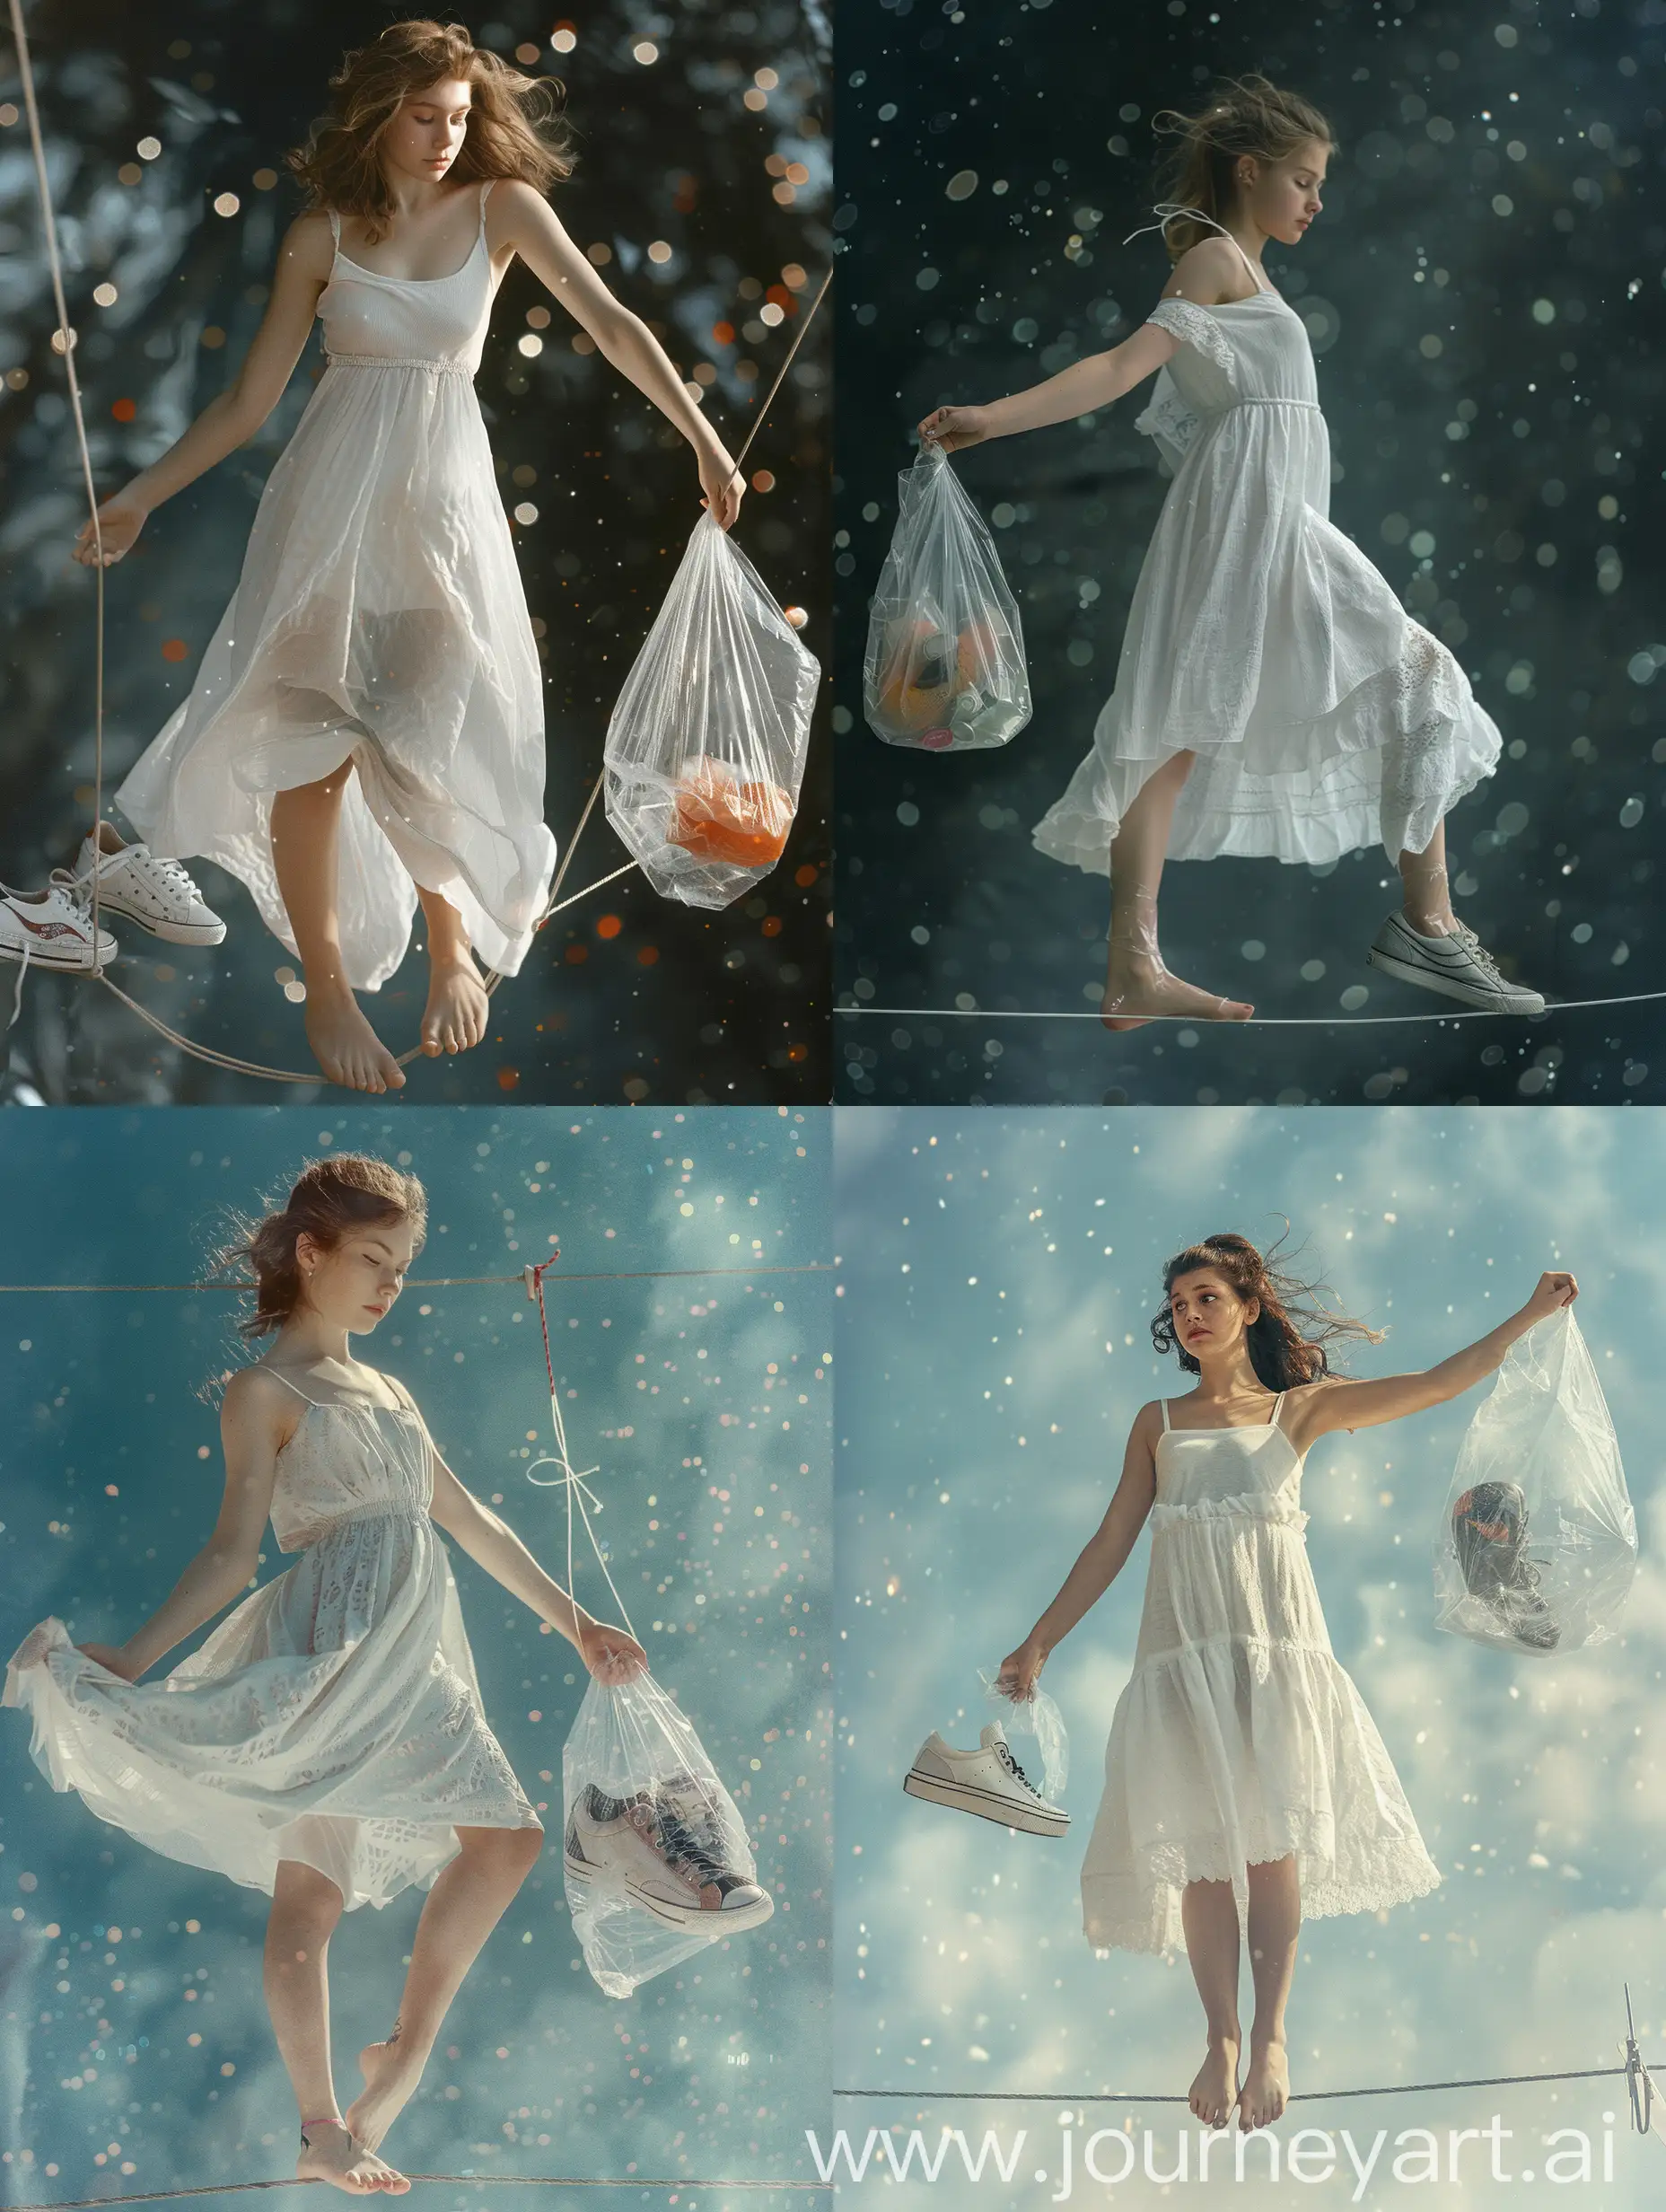 Девушка в простом белом платье,  открытые плечи, балансирует босиком  на проволоке, в одном руке цалафановый пакет с кедами, 8k, плёночная фотография, ультодетализация, рассеяние света, резкий фокус, высокая детализация